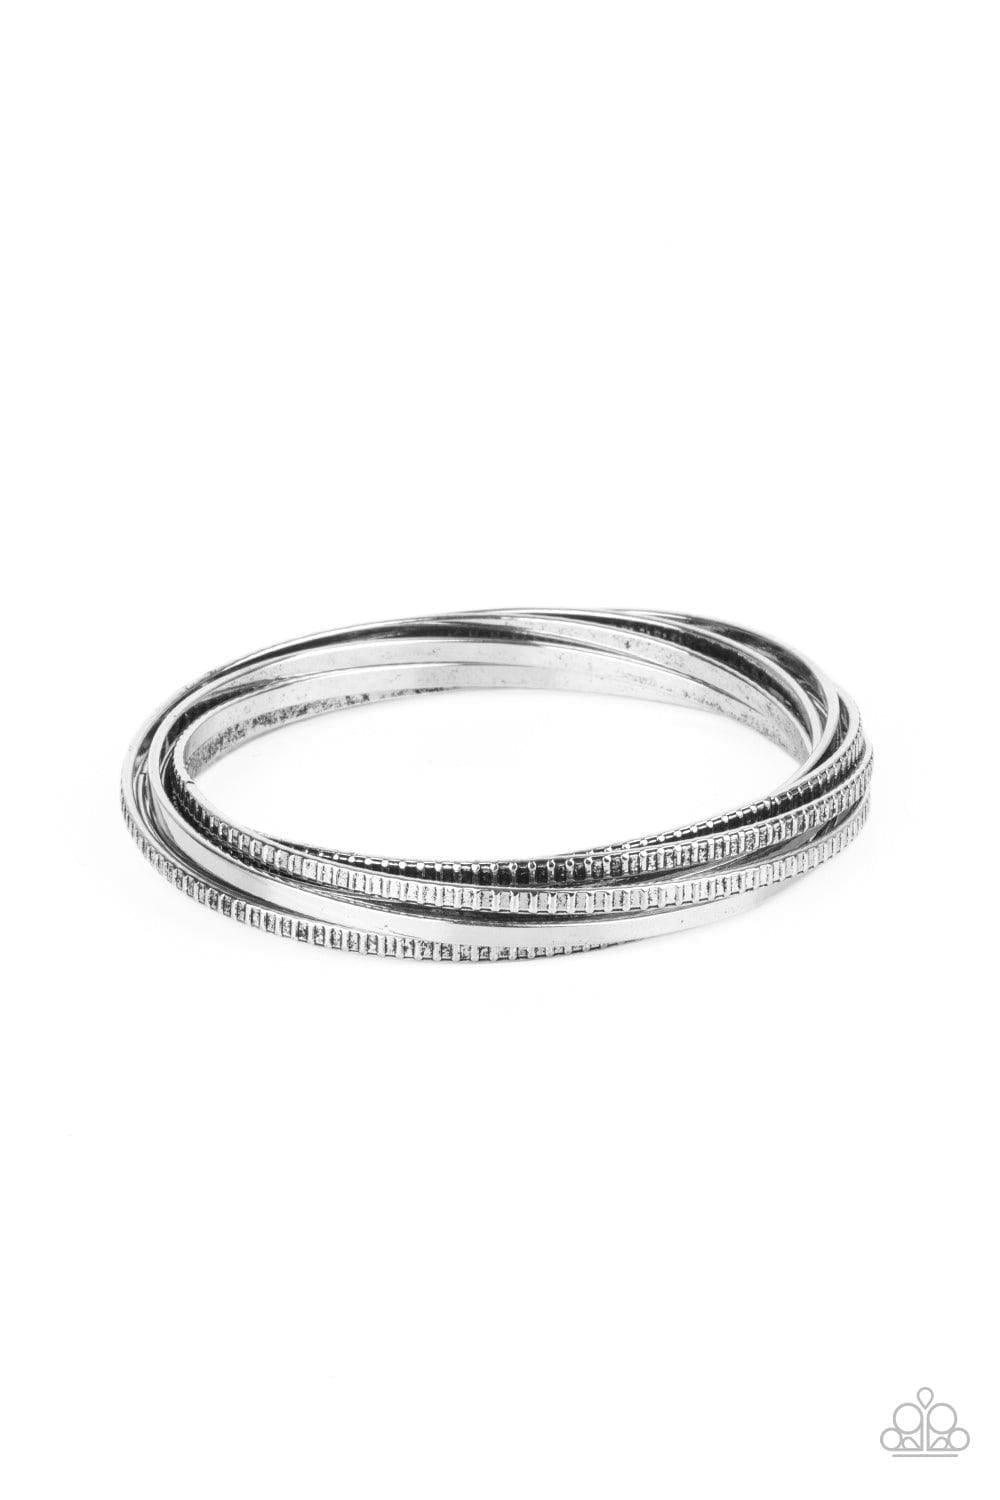 Paparazzi Accessories - Trending In Tread - Silver Bracelet - Bling by JessieK